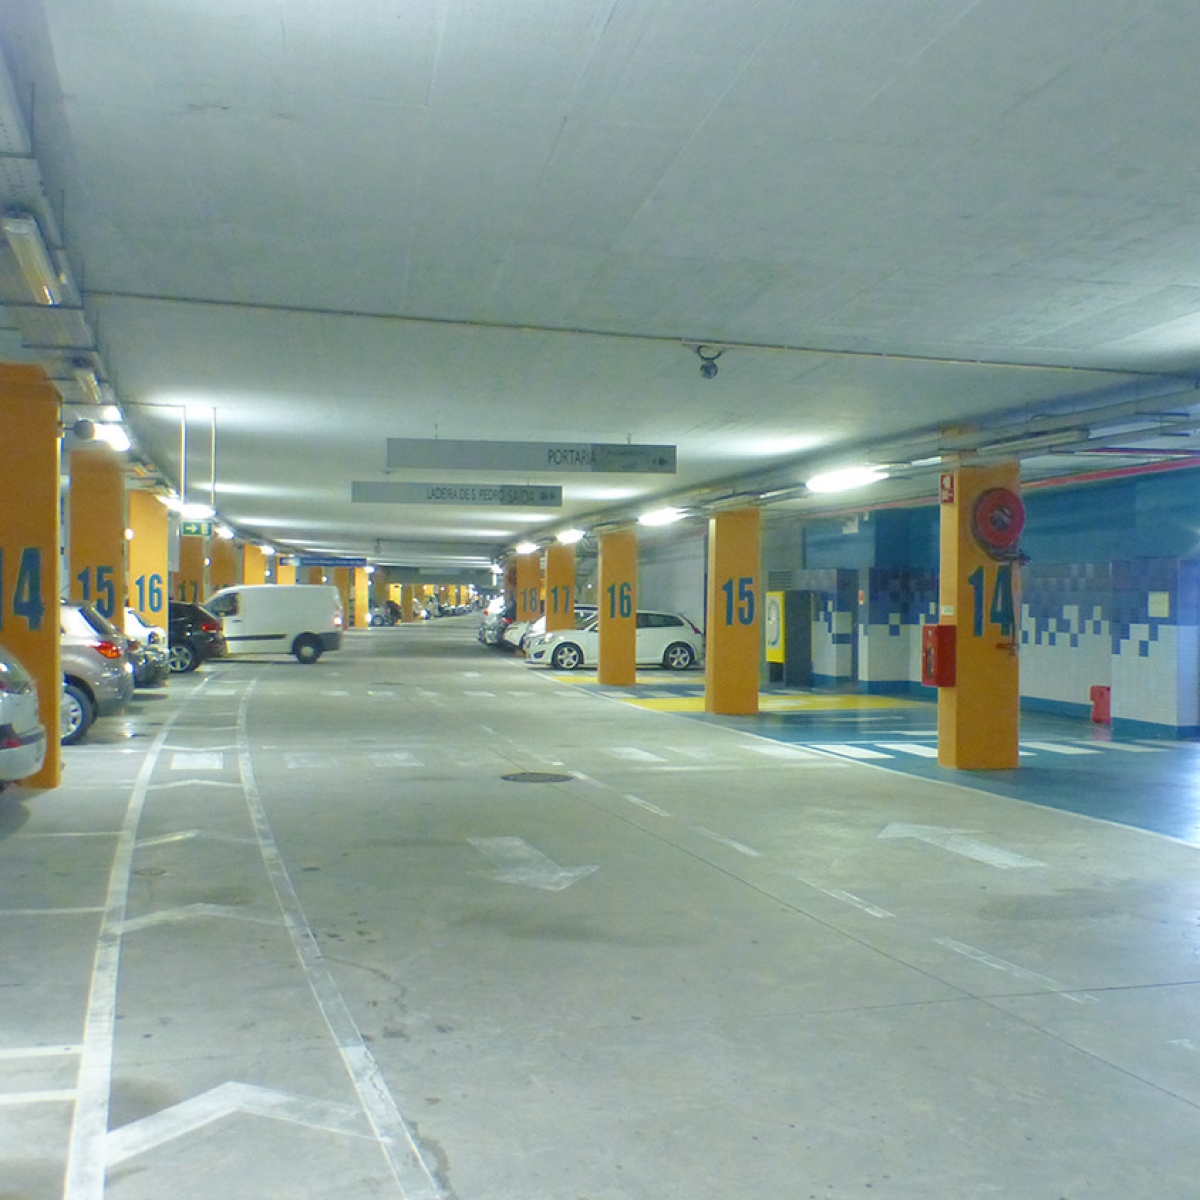 Concessionaria Parque De Estacionamento Subterraneo Da Avenida Nlgtb0ojtrw6ztjl8sdr97y2fy1uu1p8yu34ywglwg 